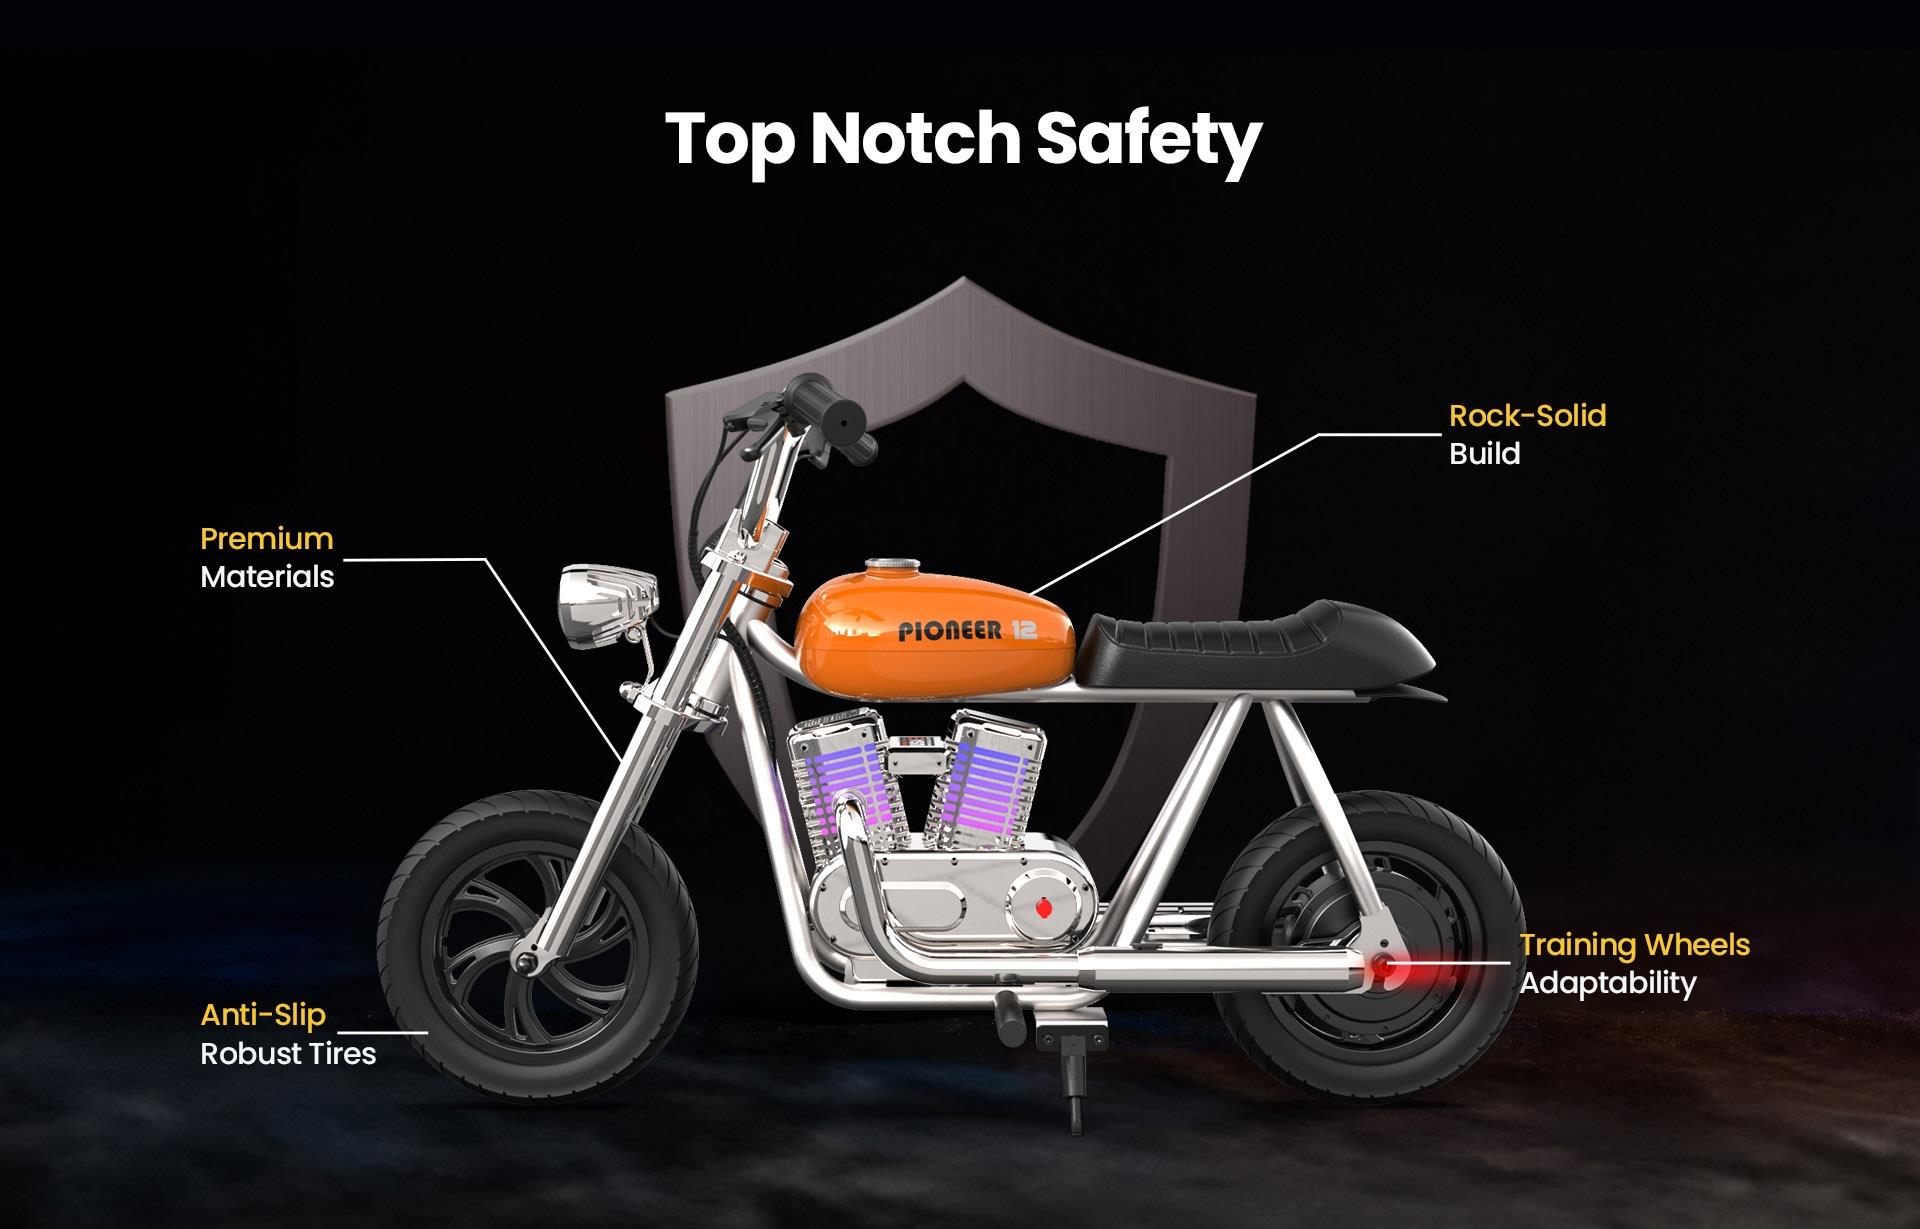 HYPER GOGO Pioneer 12 Plus met App Elektrische Motorfiets voor Kinderen, 5.2Ah 160W met 12x3 Banden, 12KM Topbereik - Blauw